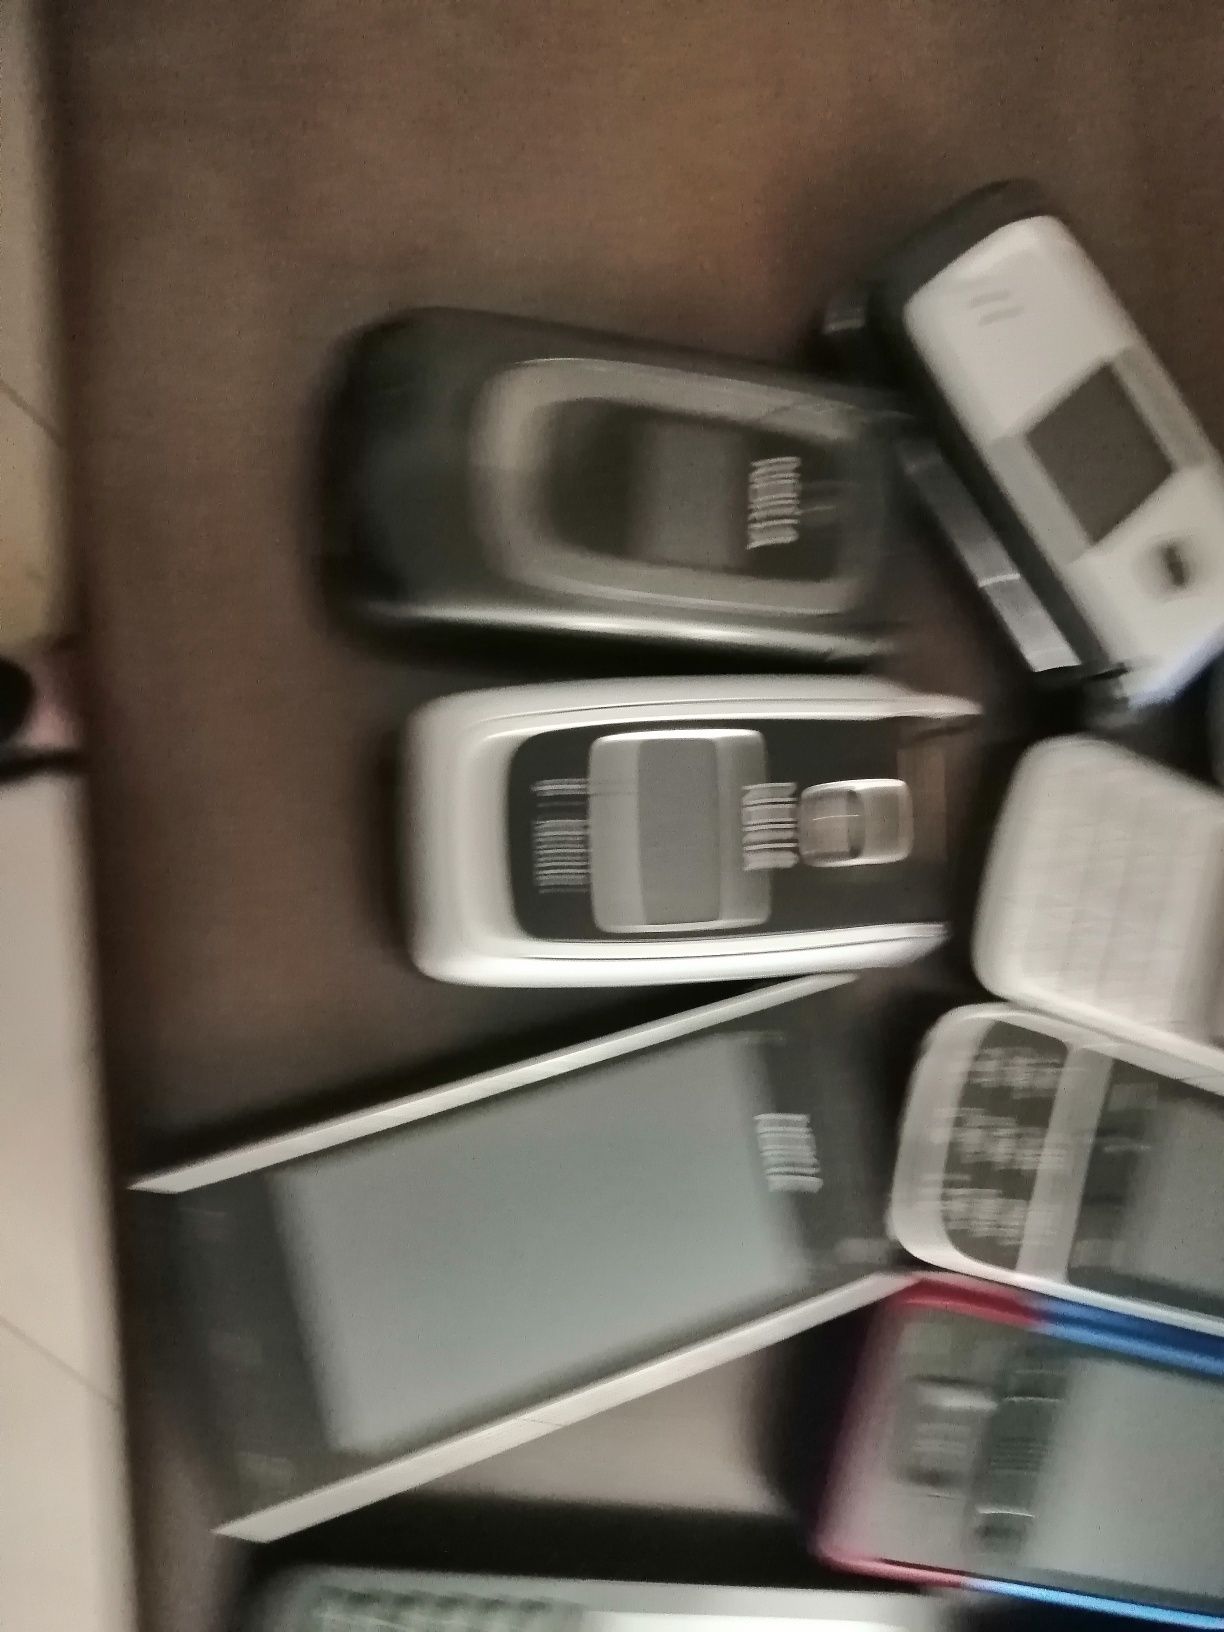 Nokia C2, C3, asha 300, 306,2700,C6,X6,6125,206,222,6234,5610d,